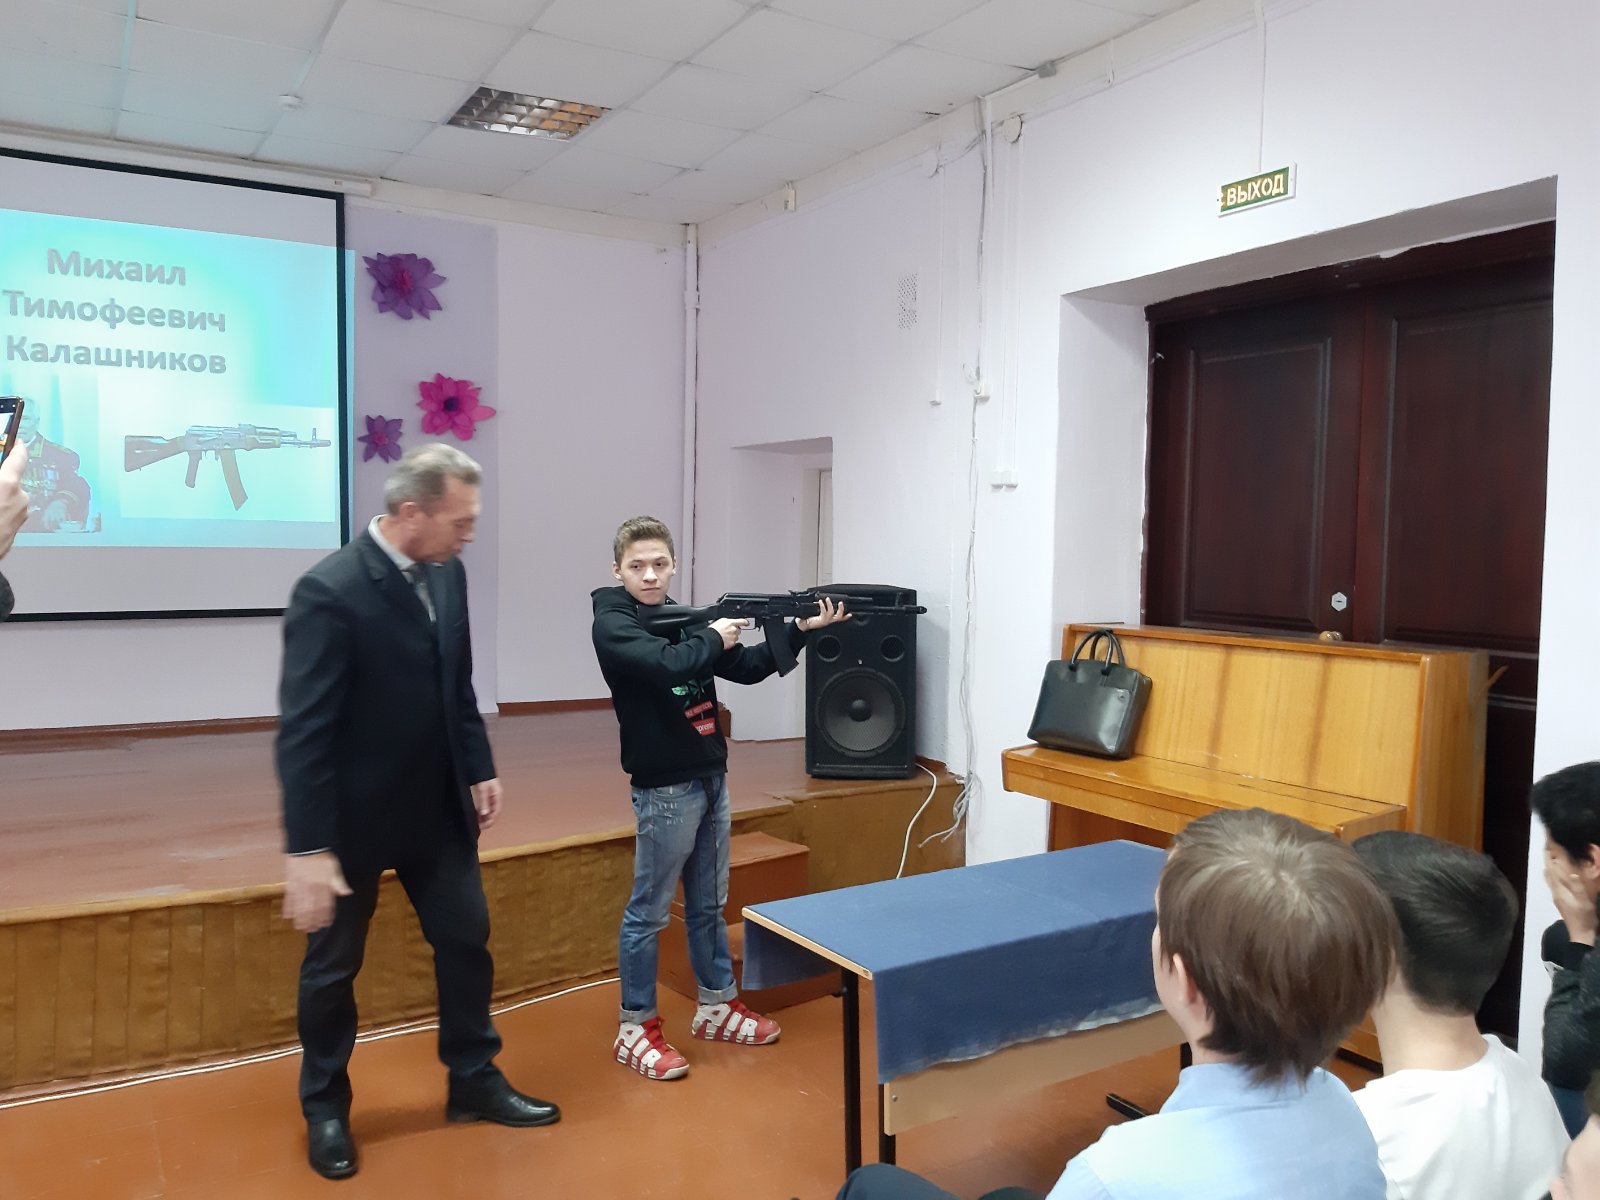 Novosti_2019_/Kalashnikov/izobrazhenie_viber_2019-11-18_13-18-24.jpg